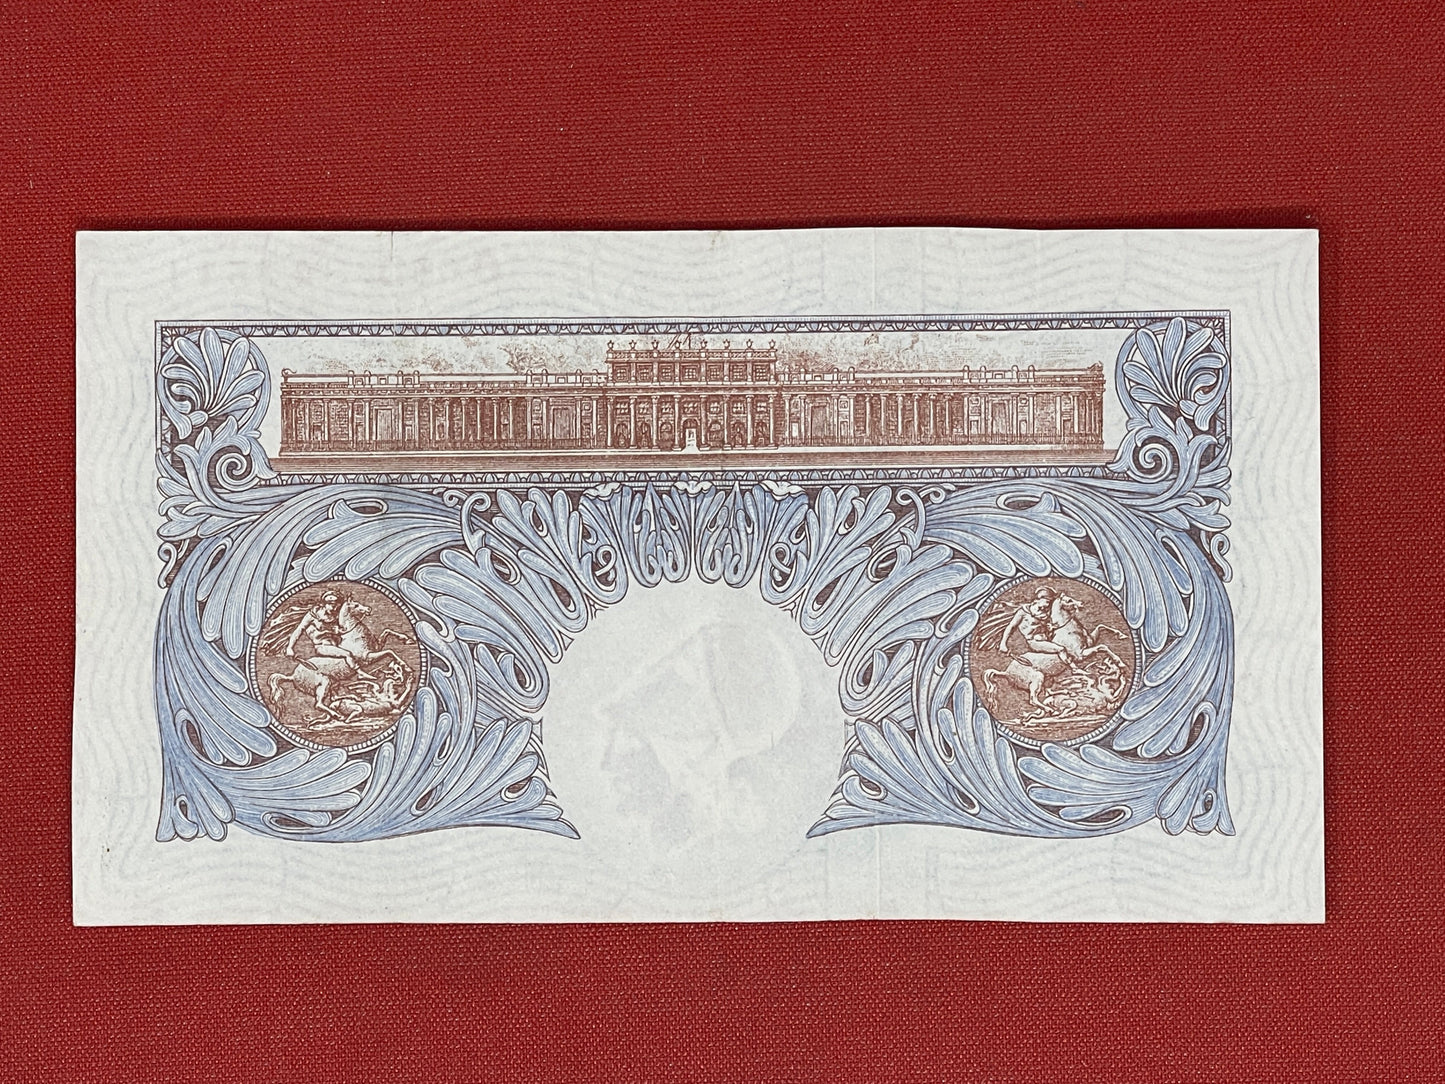 K.O. Peppiatt, One Pound, O68D 857511  ( Dugg. B.249 ) Emergency Issue Banknote 29th March 1940